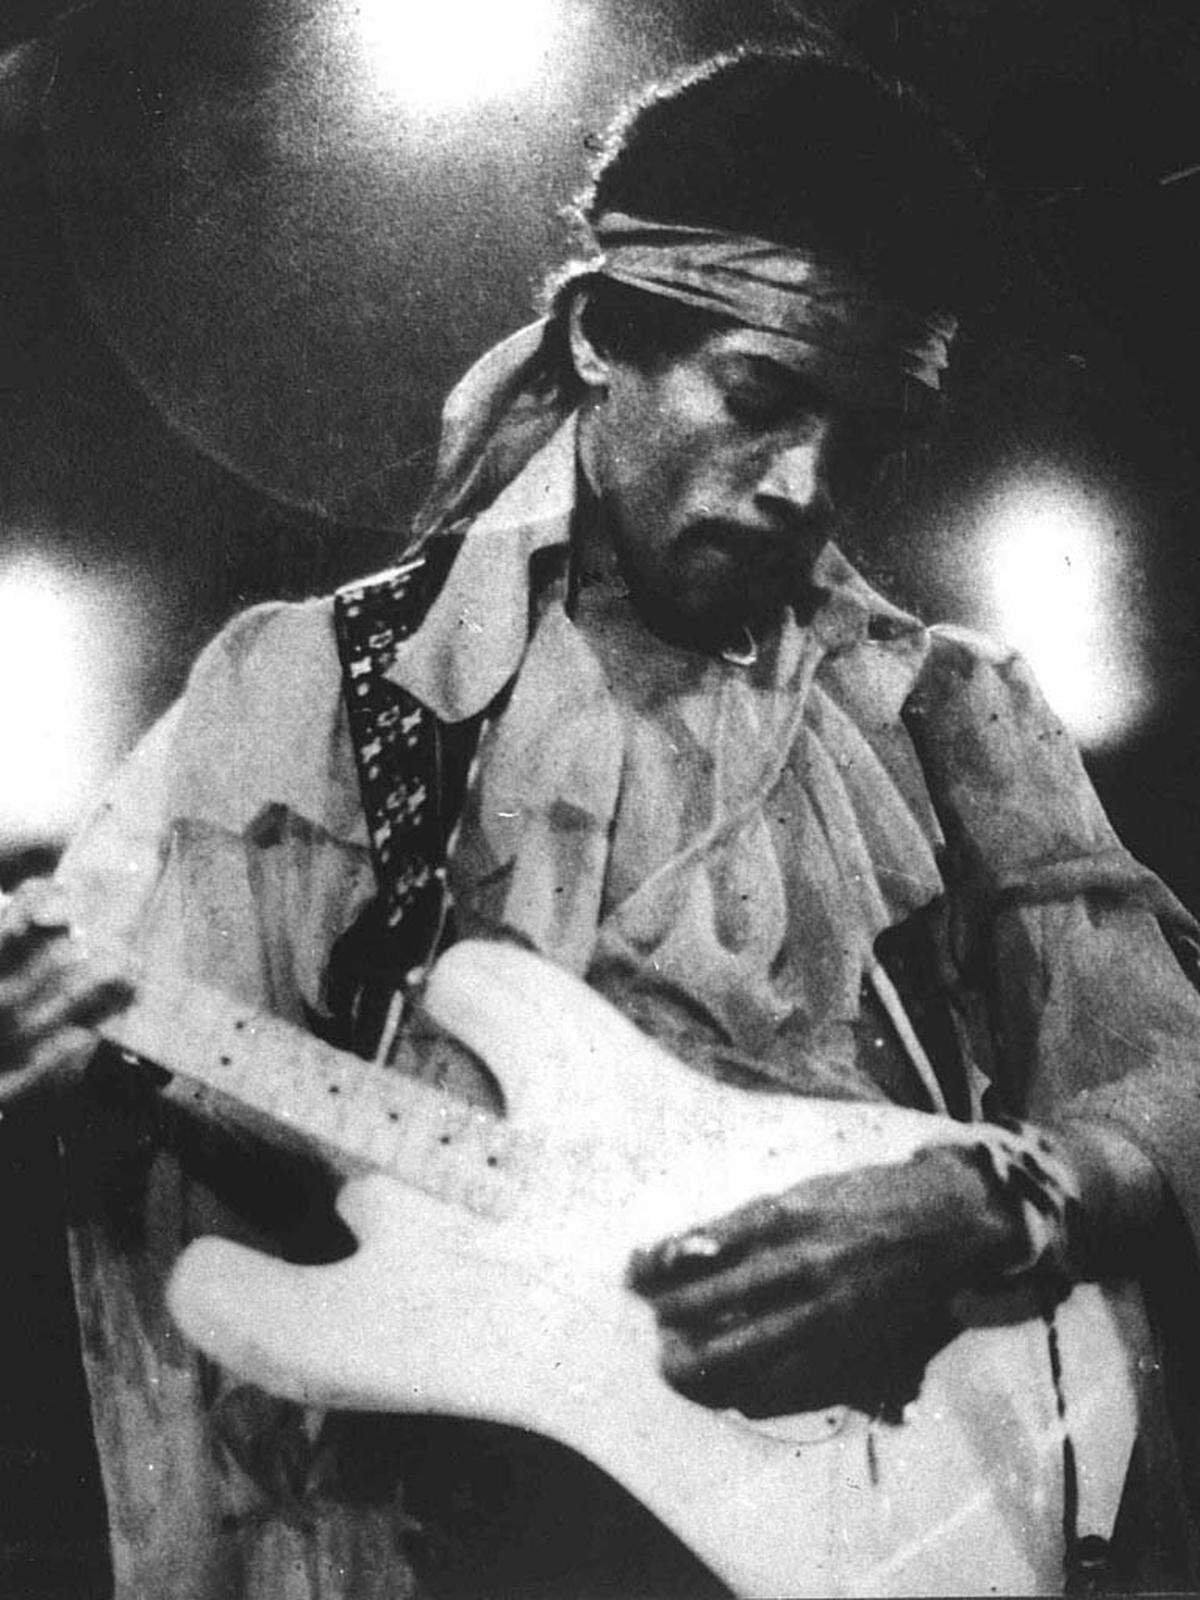 Für seinen kometenhaften Aufstieg blieben Jimi Hendrix gerade vier Jahre Zeit. 1966 hatte der frühere Bassist Charles "Chaz" Chandler den noch weitgehend unbekannten Musiker James Marshall Hendrix von den USA ins "Swinging London" verfrachtet. Aus James wurde im Flugzeug Jimi, aus Hendricks Hendrix. In Großbritannien sollte er etablierten Stars wie den Rolling Stones und The Who Paroli bieten.